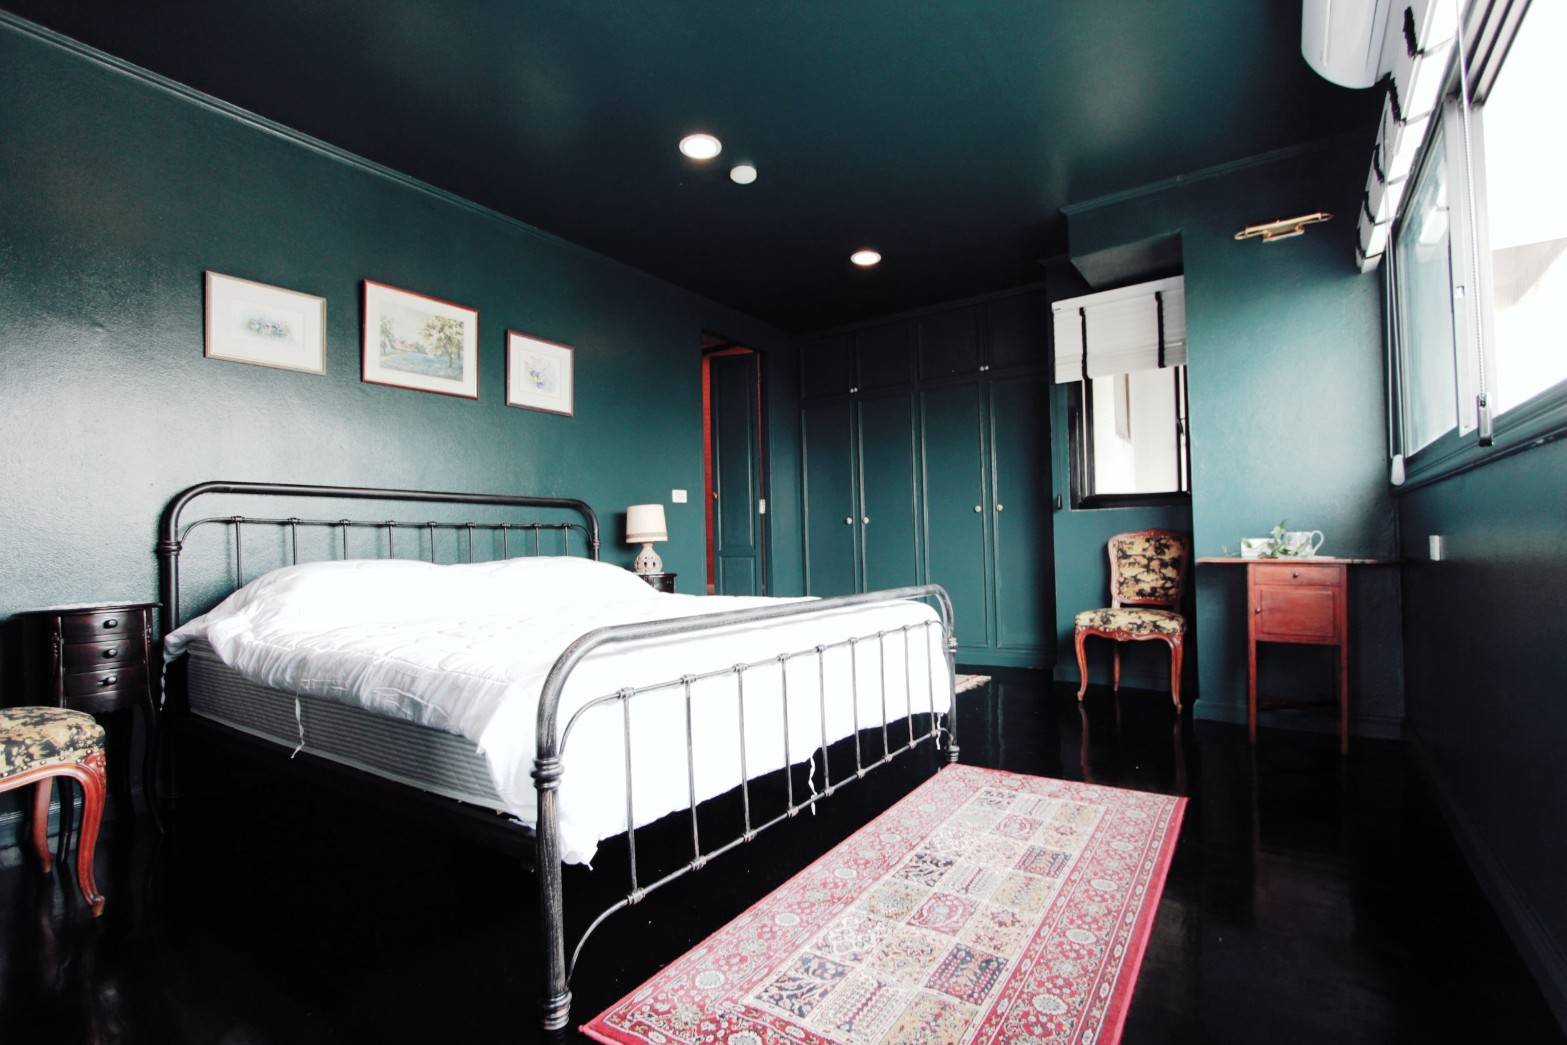 ขายด่วน คอนโดสวยเฉี่ยว ซิตี้ รีสอร์ท สุขุมวิท 49  แบบ 2 ห้องนอน เหมาะซื้อลงทุน ** For Sale ** Stylishly Decorated 2 Bedroom Unit at Citi Resort Sukhumvit 49 - Good for Investment รูปที่ 1